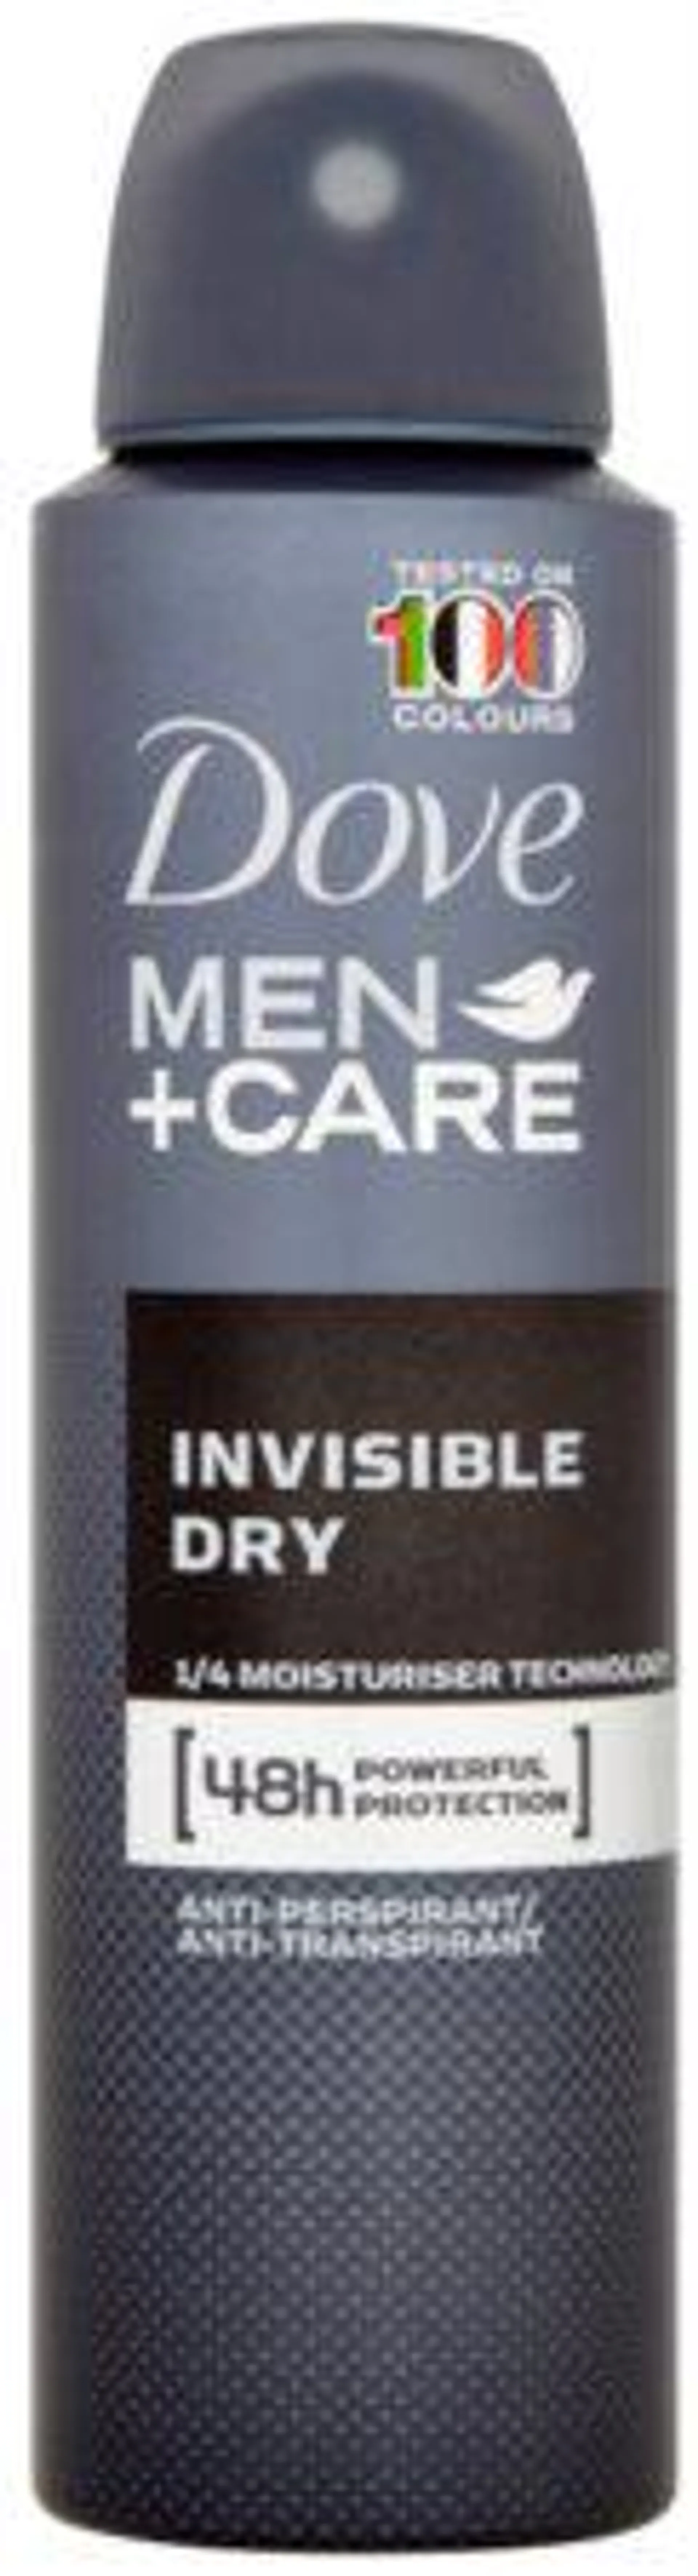 Men+Care Invisble Dry